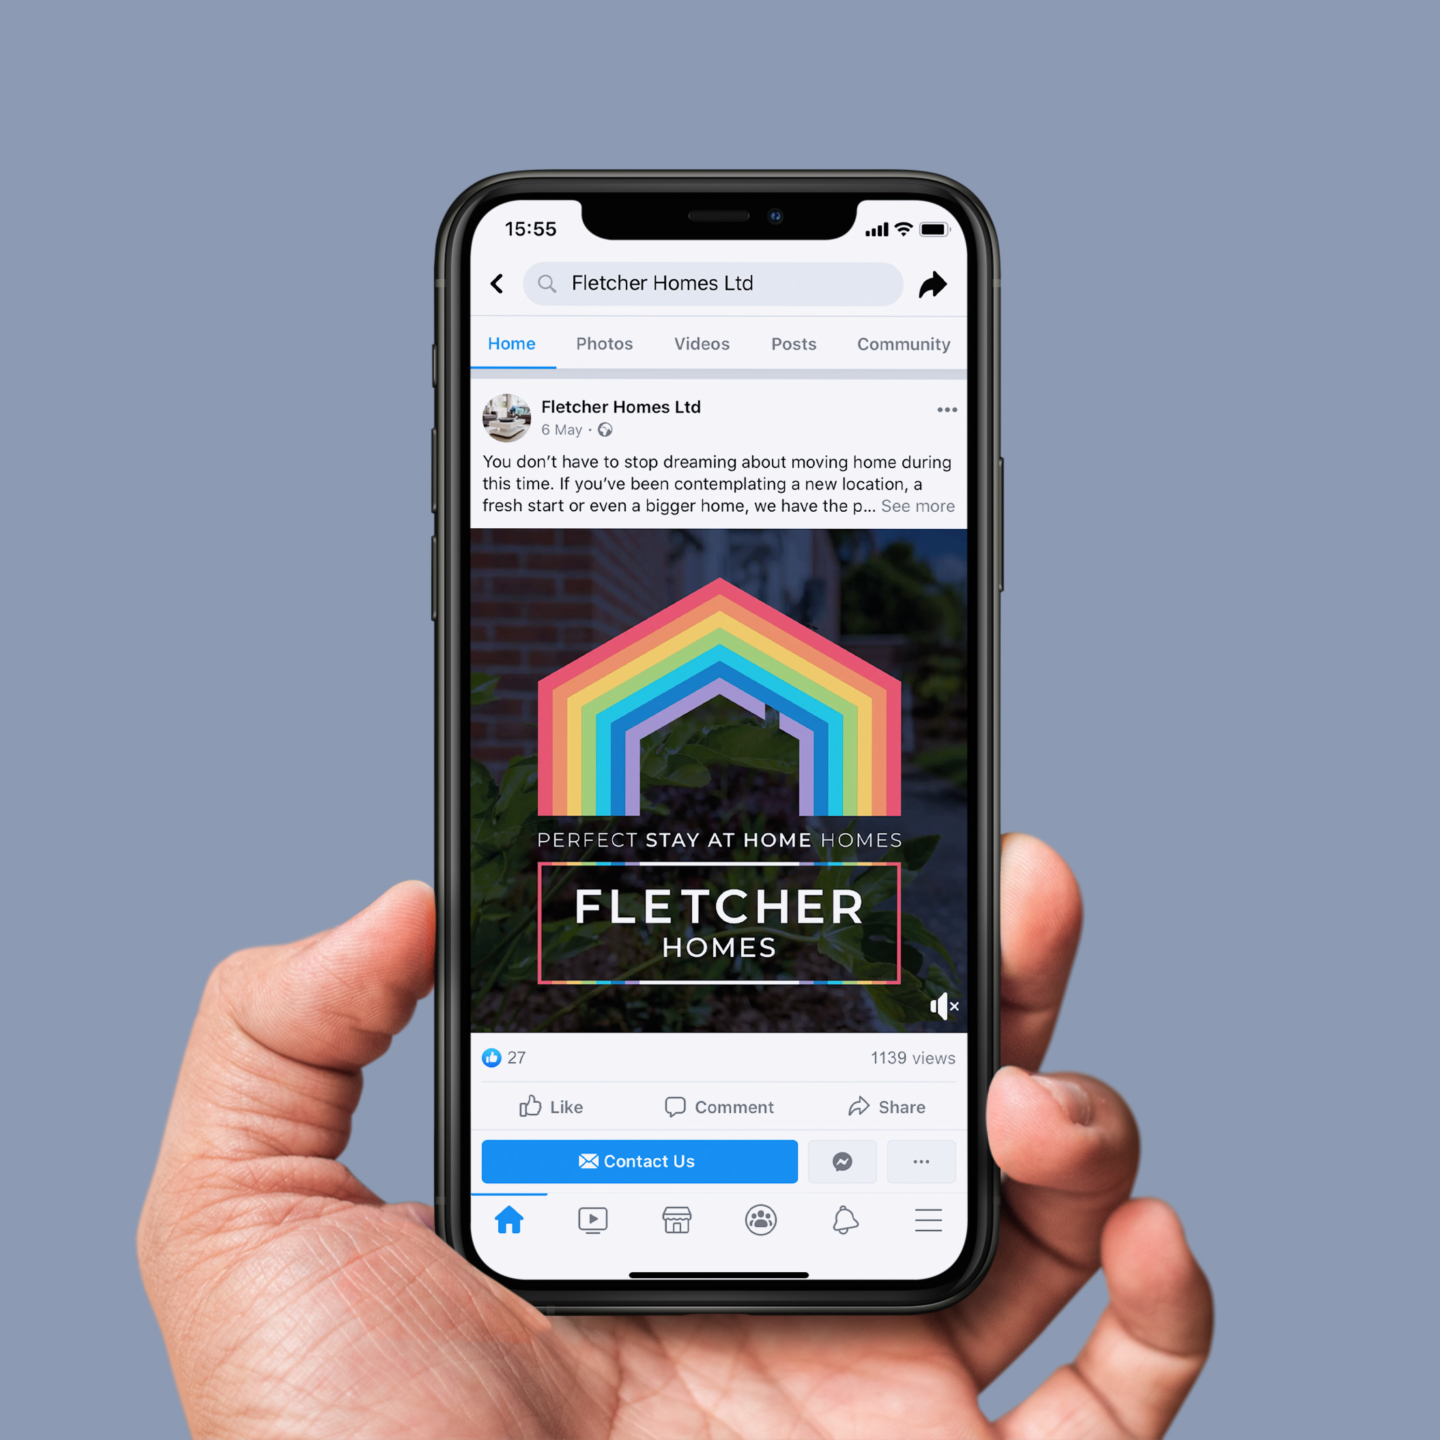 Fletcher Homes social media campaign